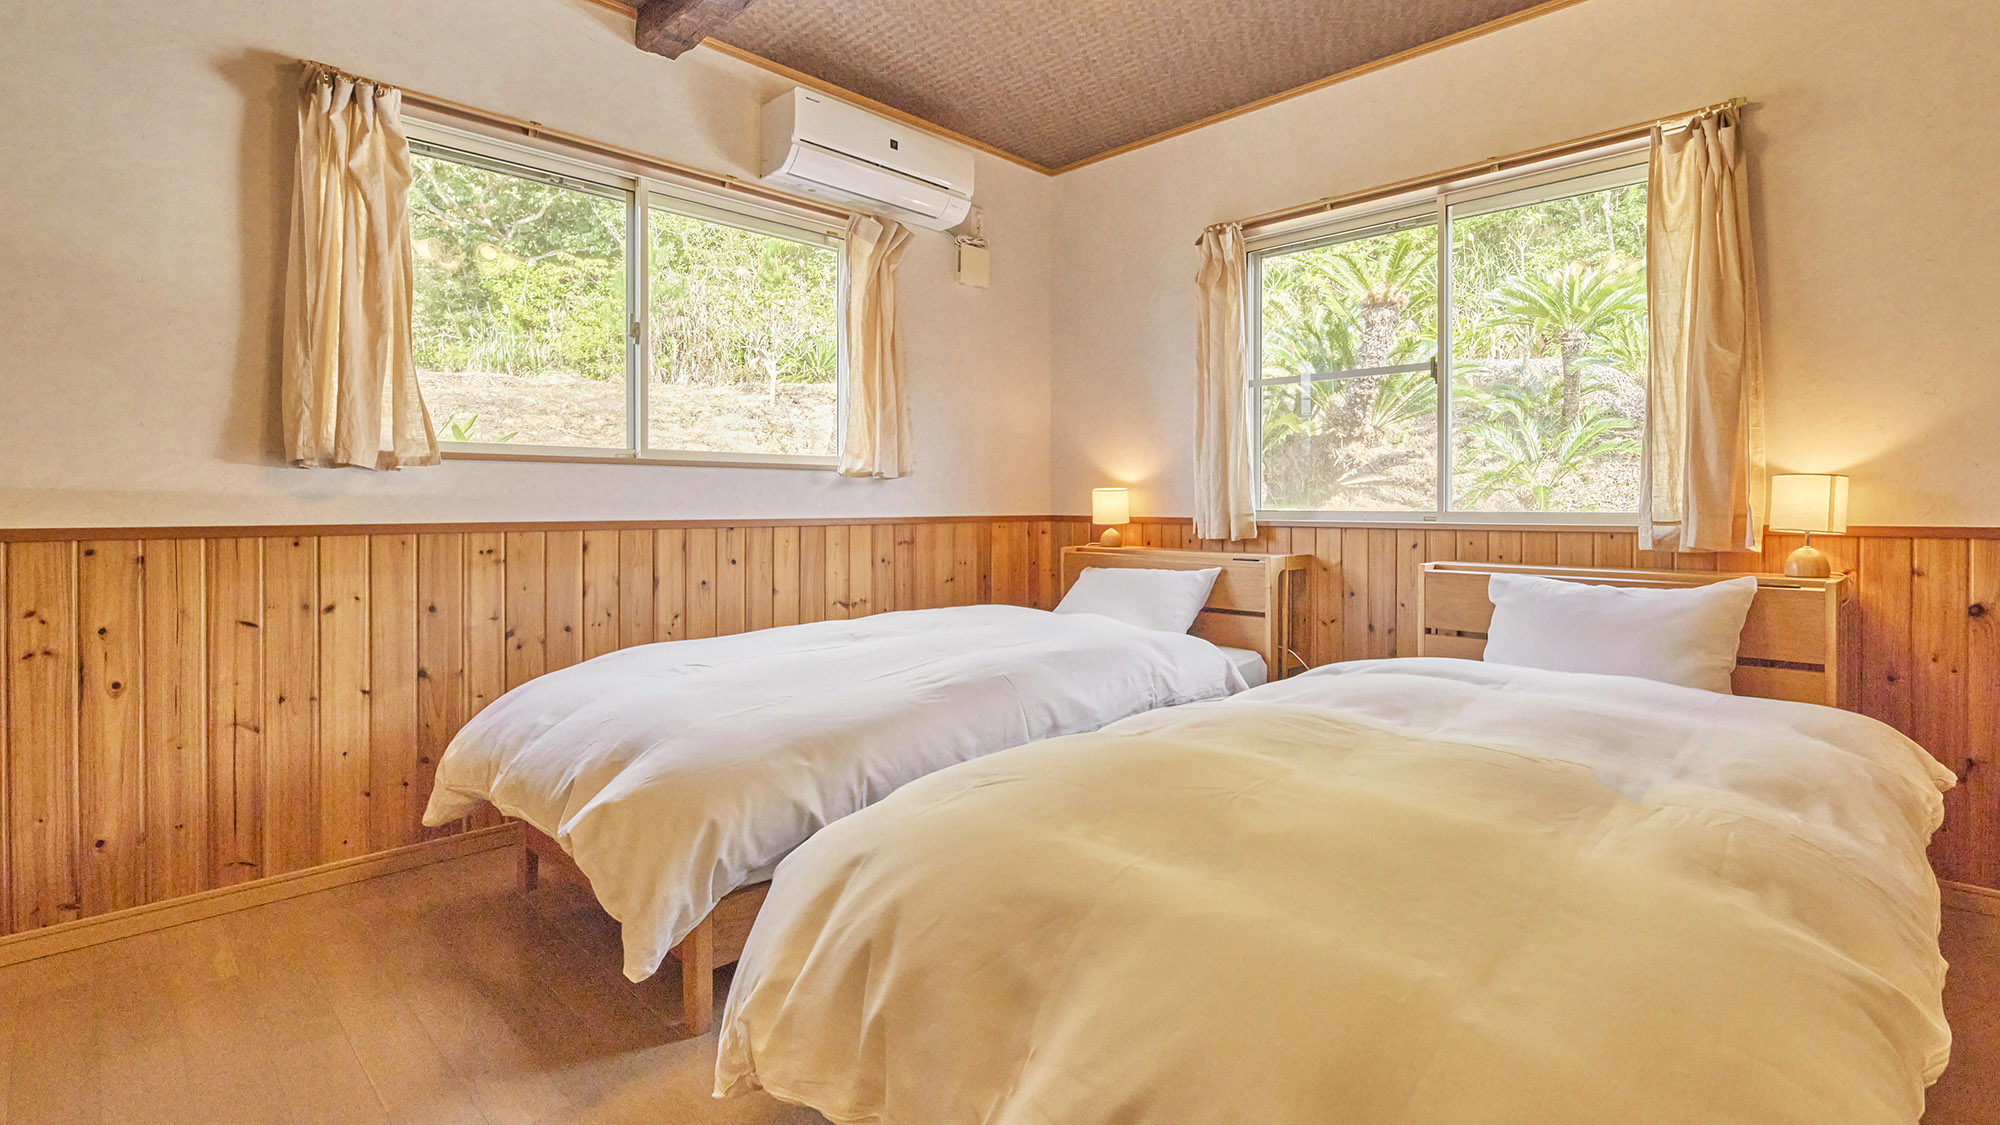 ・【マウンテンルーム】大自然に包まれた癒しの寝室です。朝は気持ちよく過ごせますよ